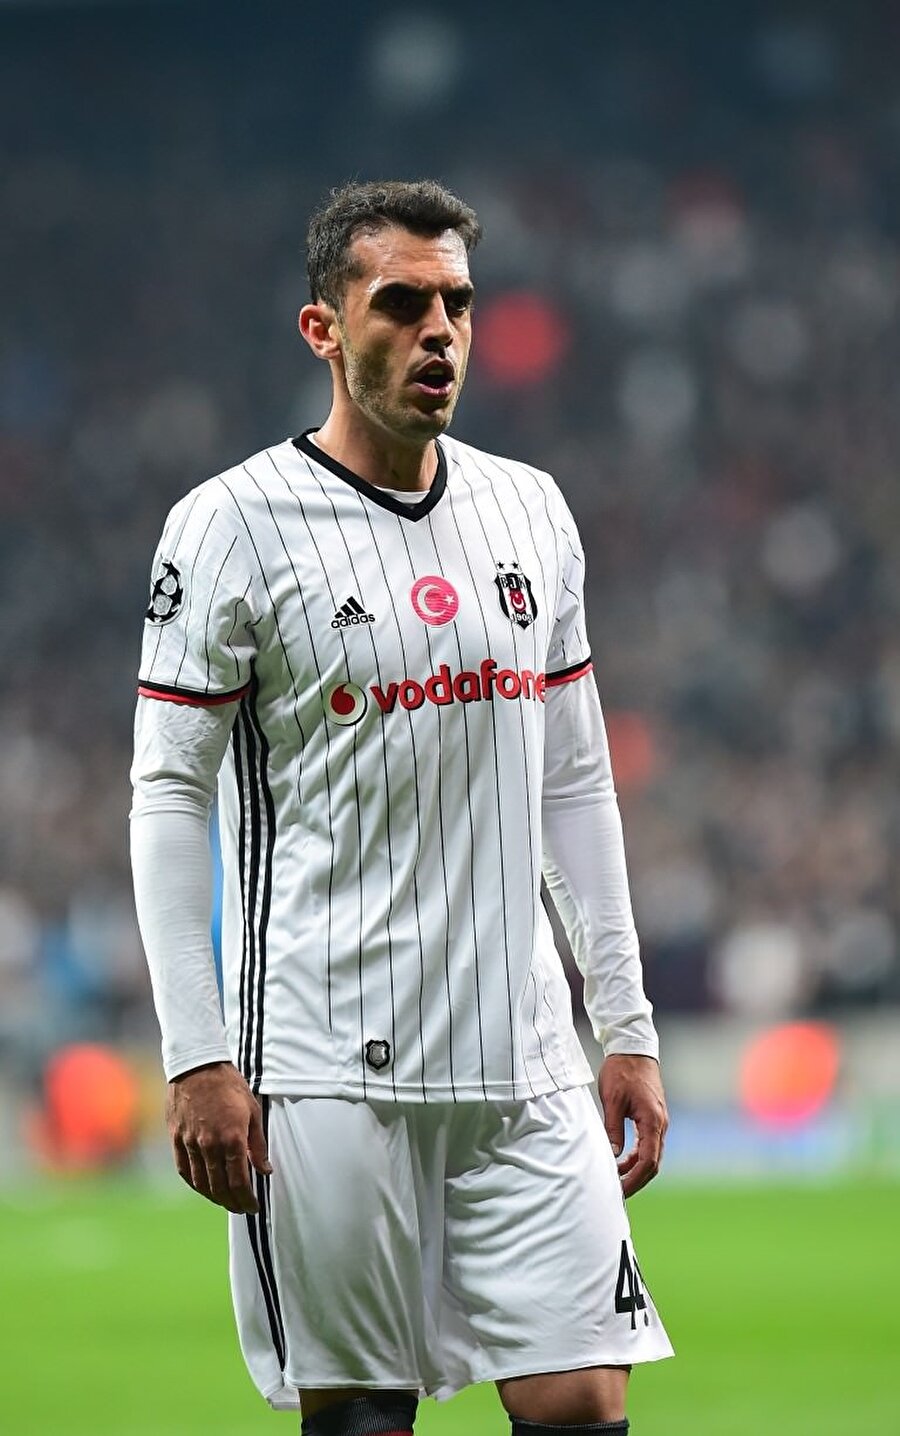 Rhodolfo iki sezon Beşiktaş forması giydi.